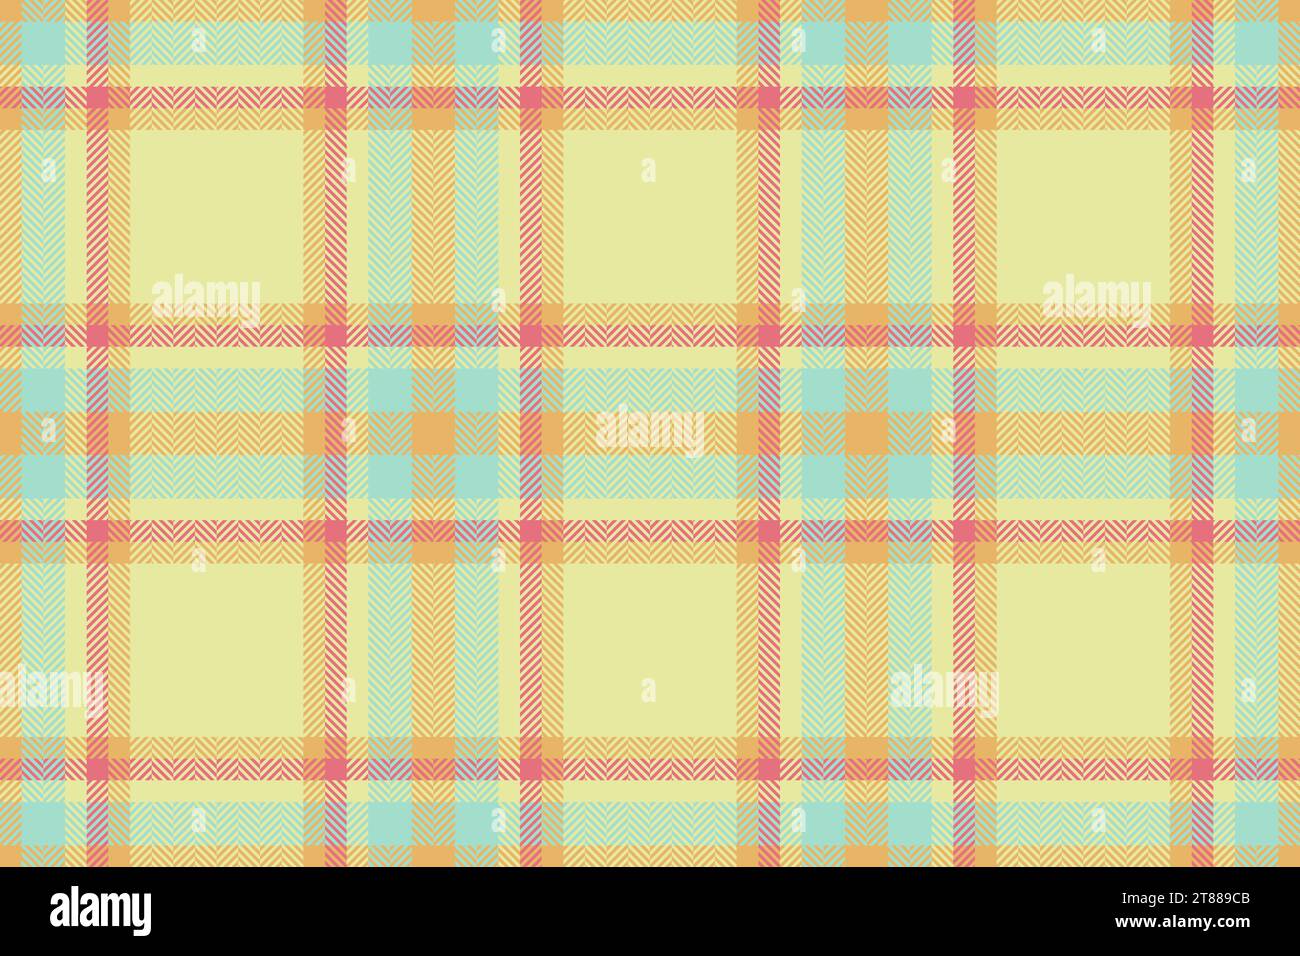 Kariertes Stoffmuster des textilen Schottenkaros mit einem nahtlosen Texturhintergrund des Vektors in Limetten- und Bernsteinfarben. Stock Vektor